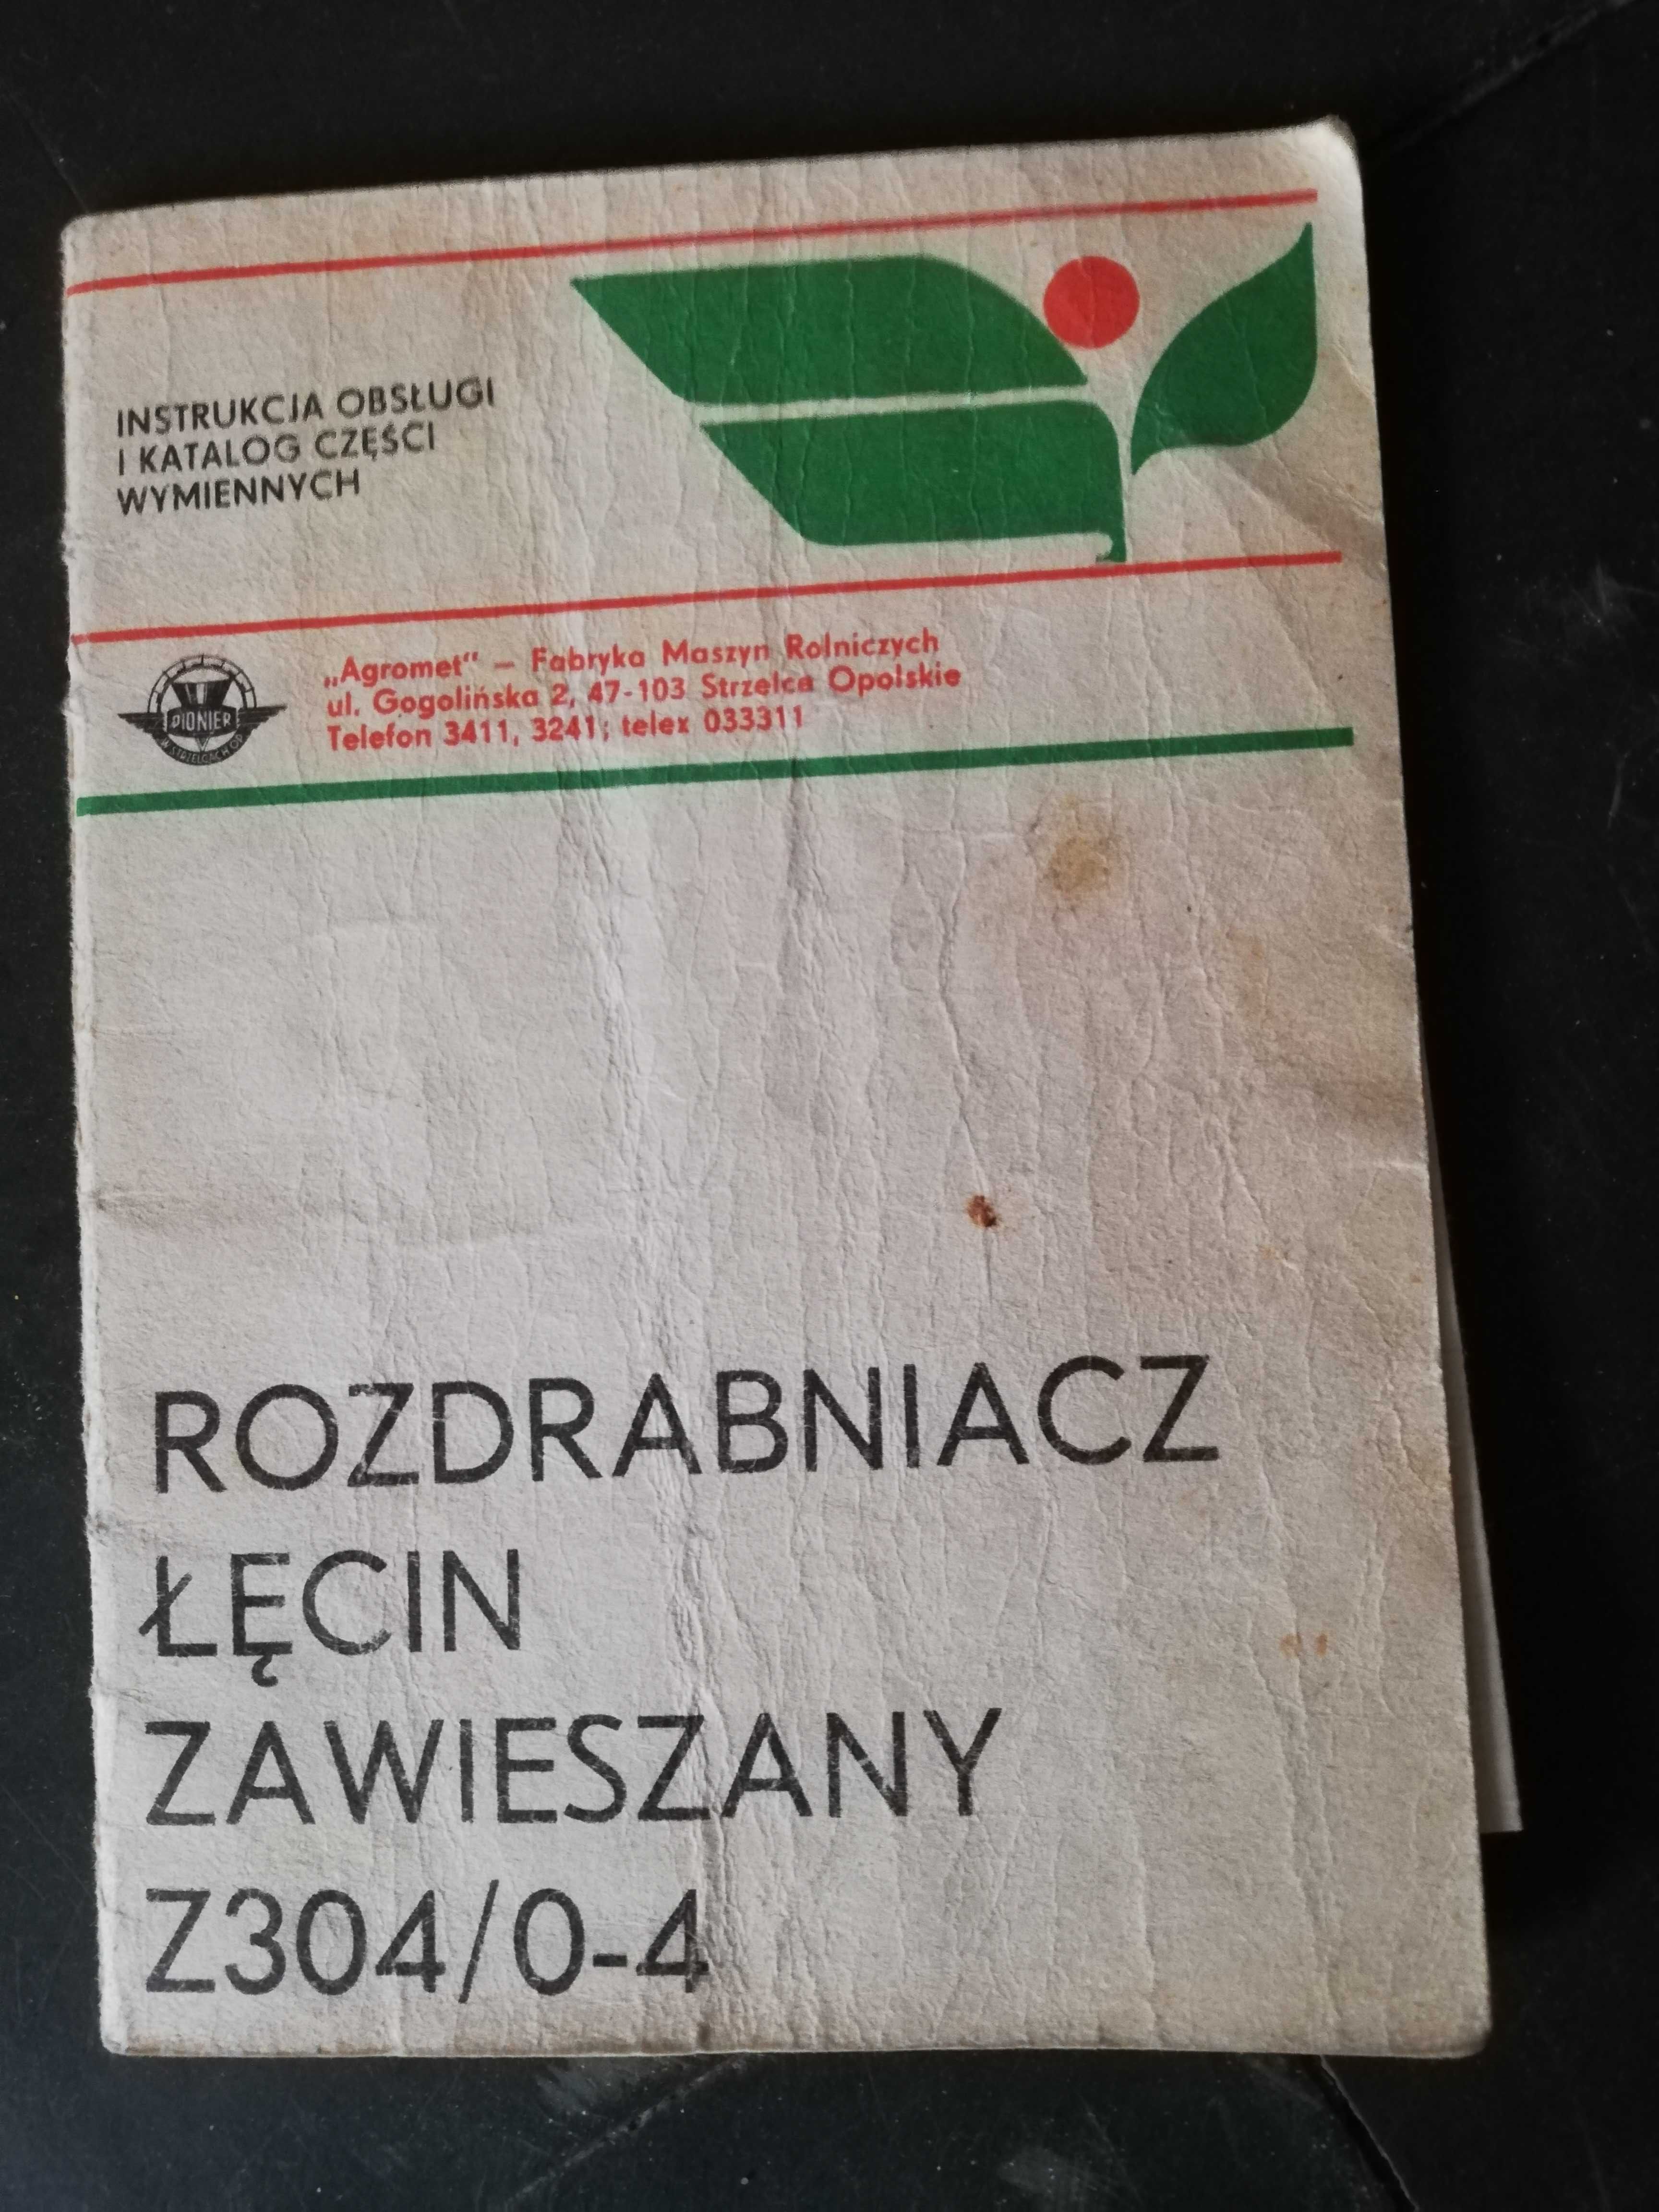 Rozdrabniacz Łęcin zawieszany Z304/0-4 - instrukcja